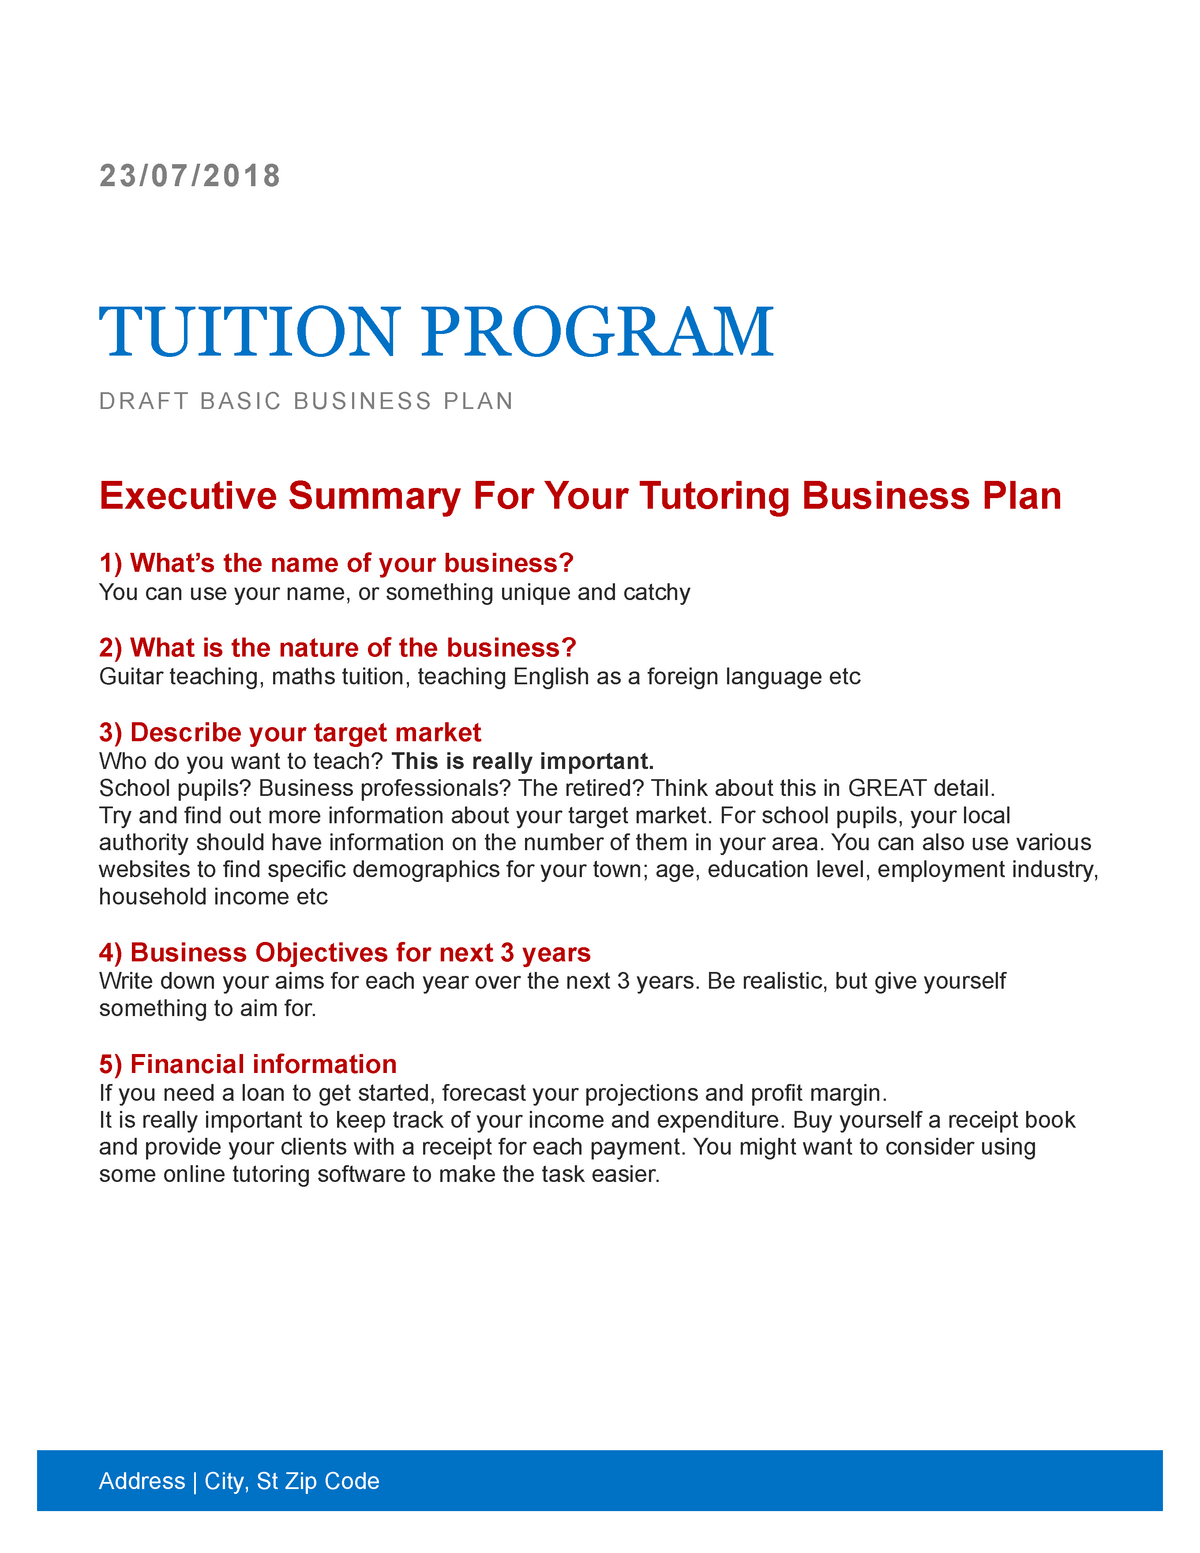 tuition centre business plan pdf